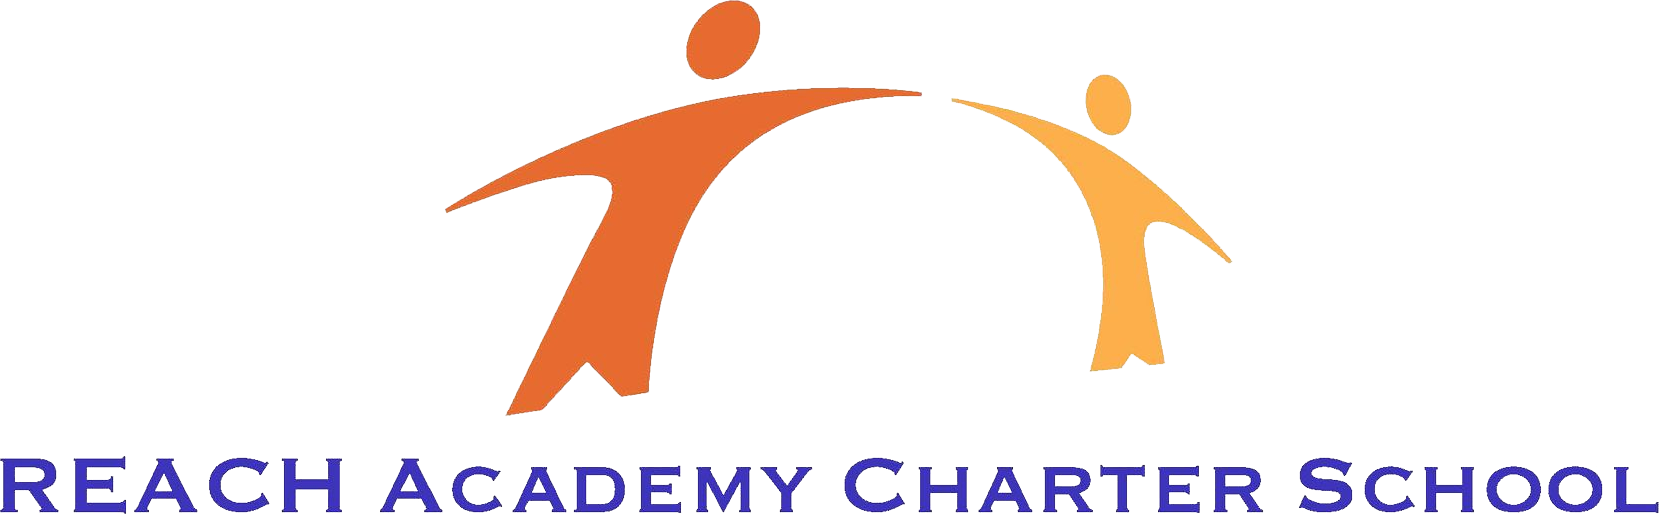 REACH Academy Charter School